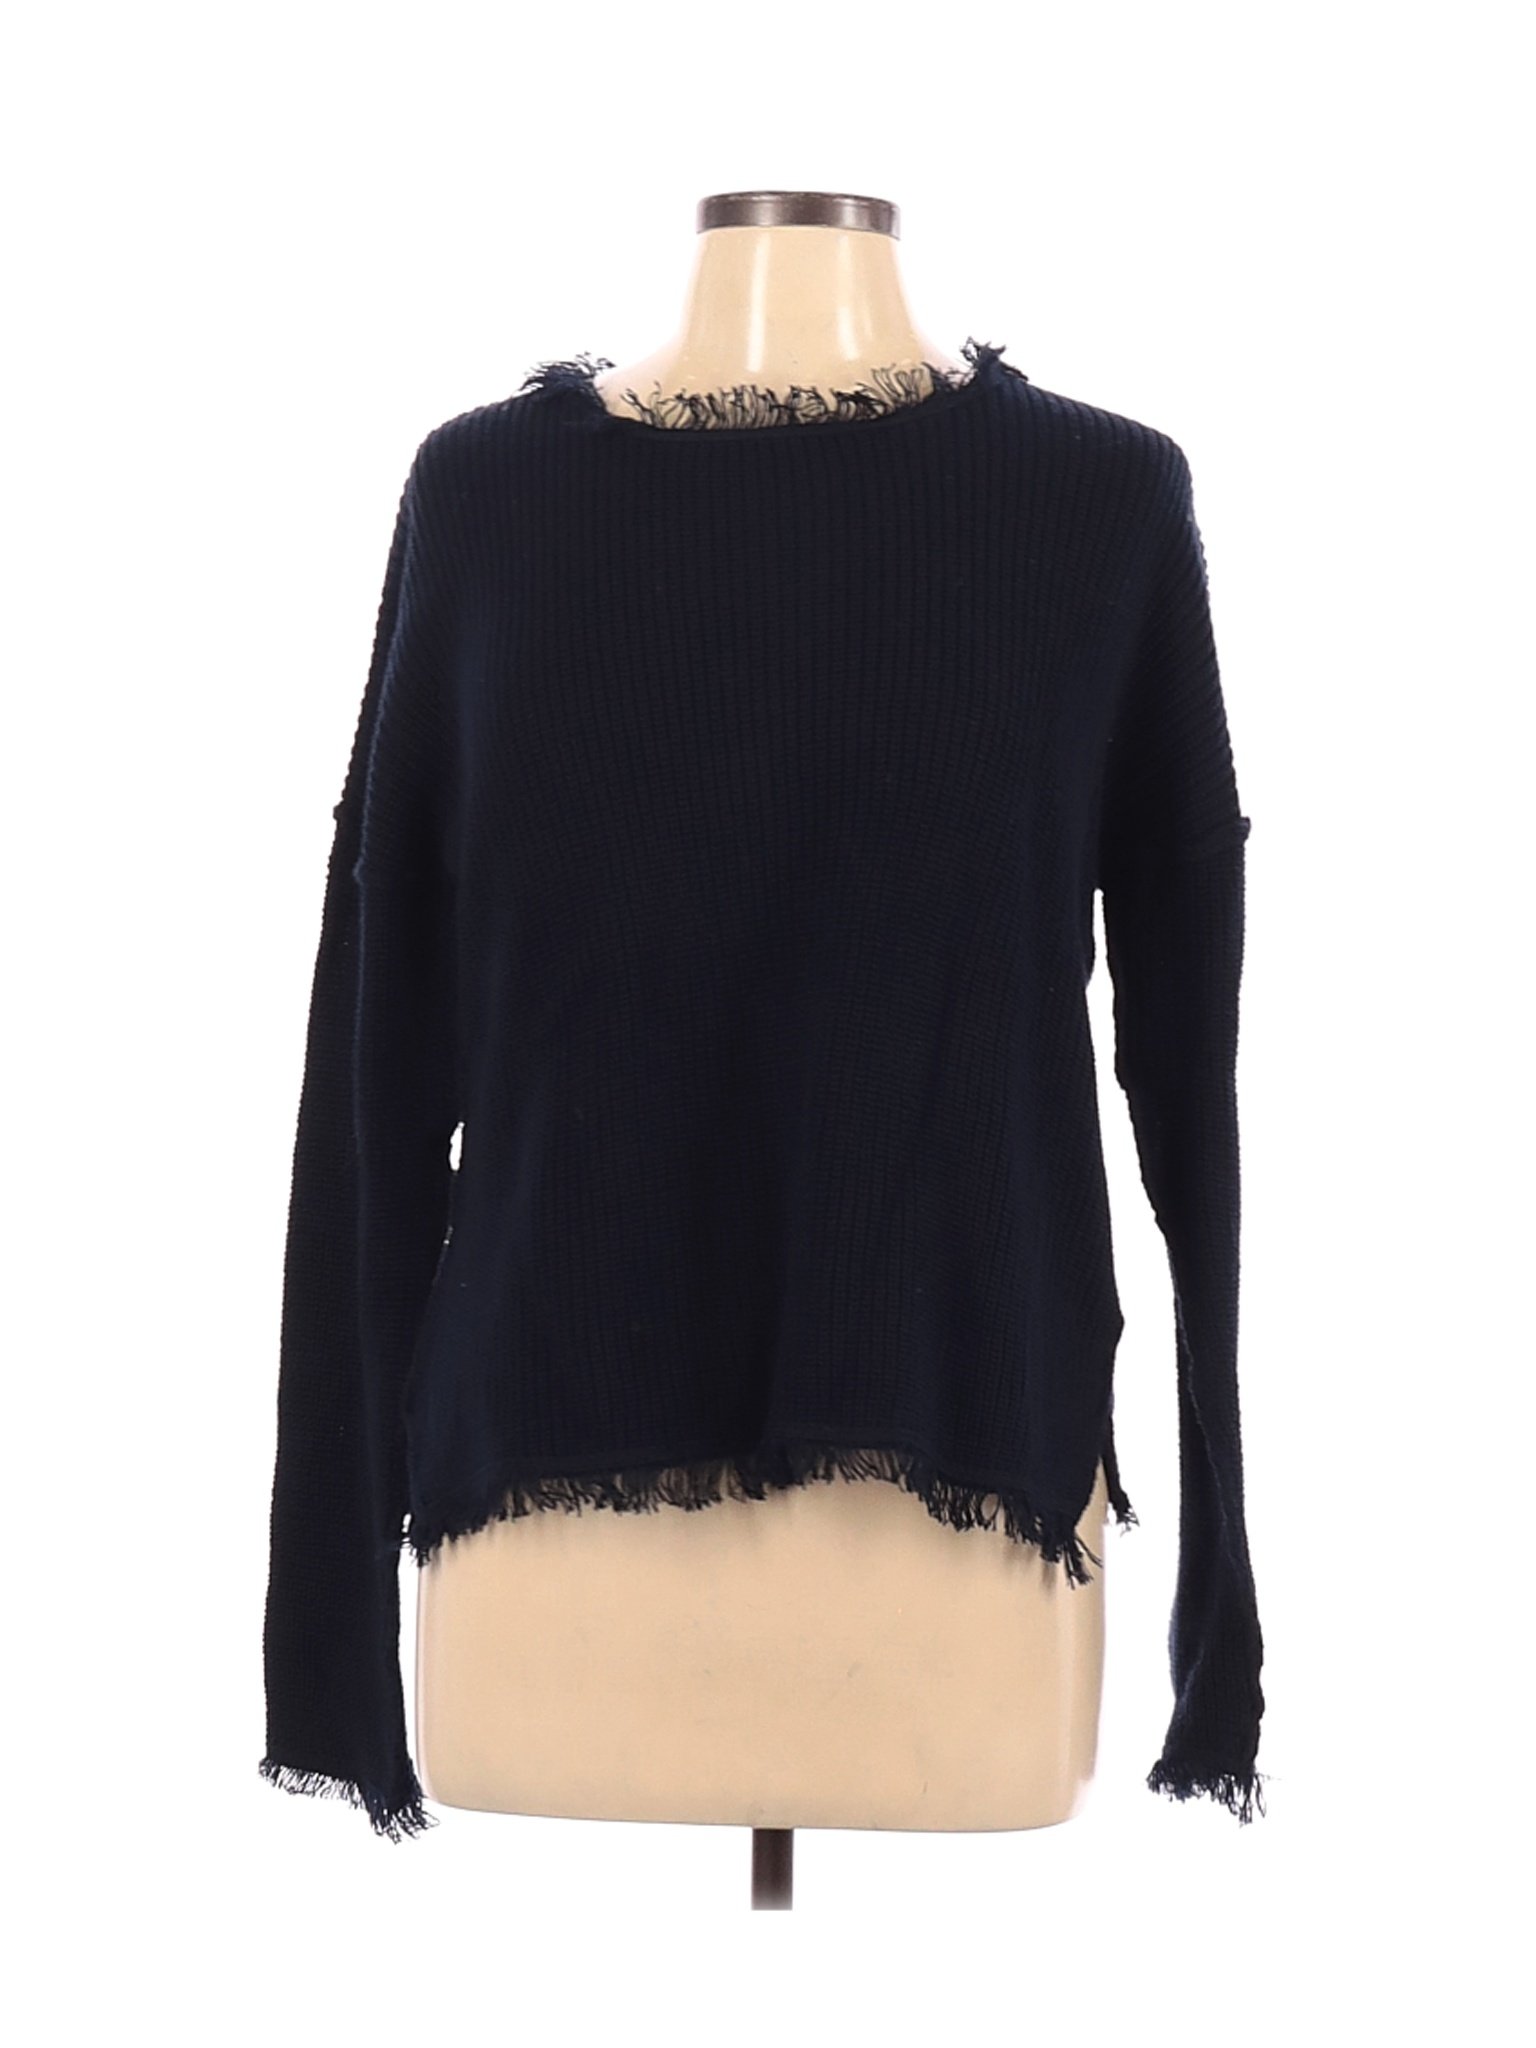 Philosophy by Republic Women Black Pullover Sweater L | eBay